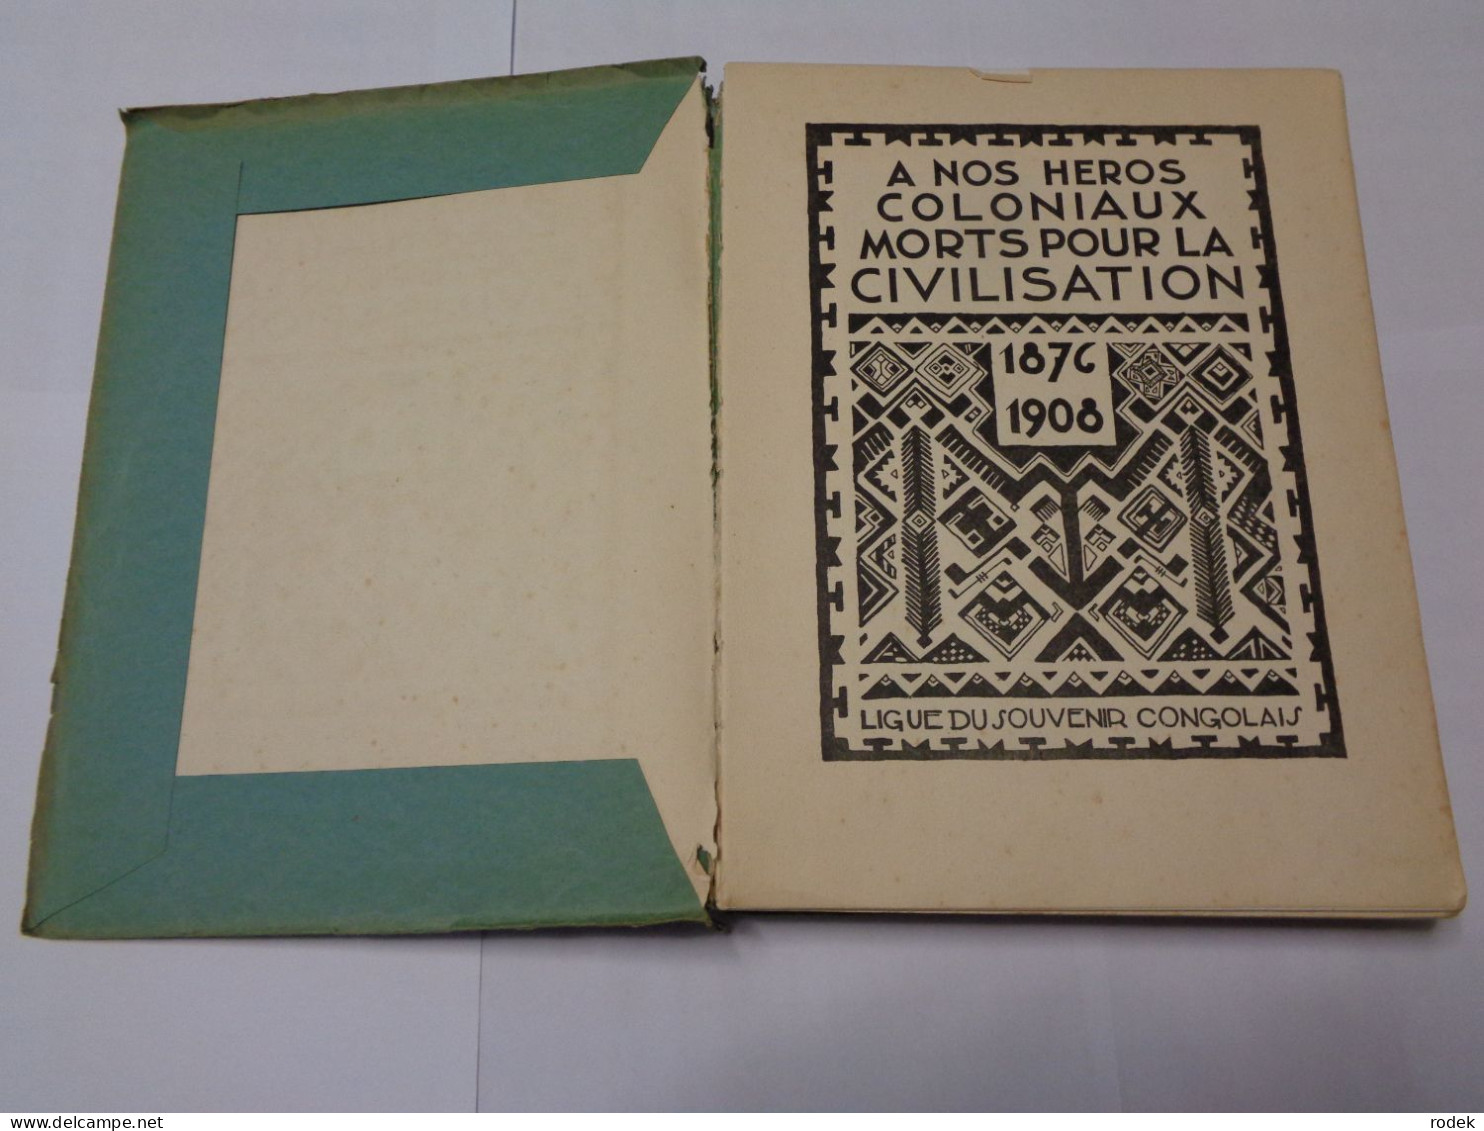 Livre D'or : A Nos Héros Coloniaux Morts Pour La Civilisation ( 1870 - 1908 ) Ligue Du Souvenir Congolais - History